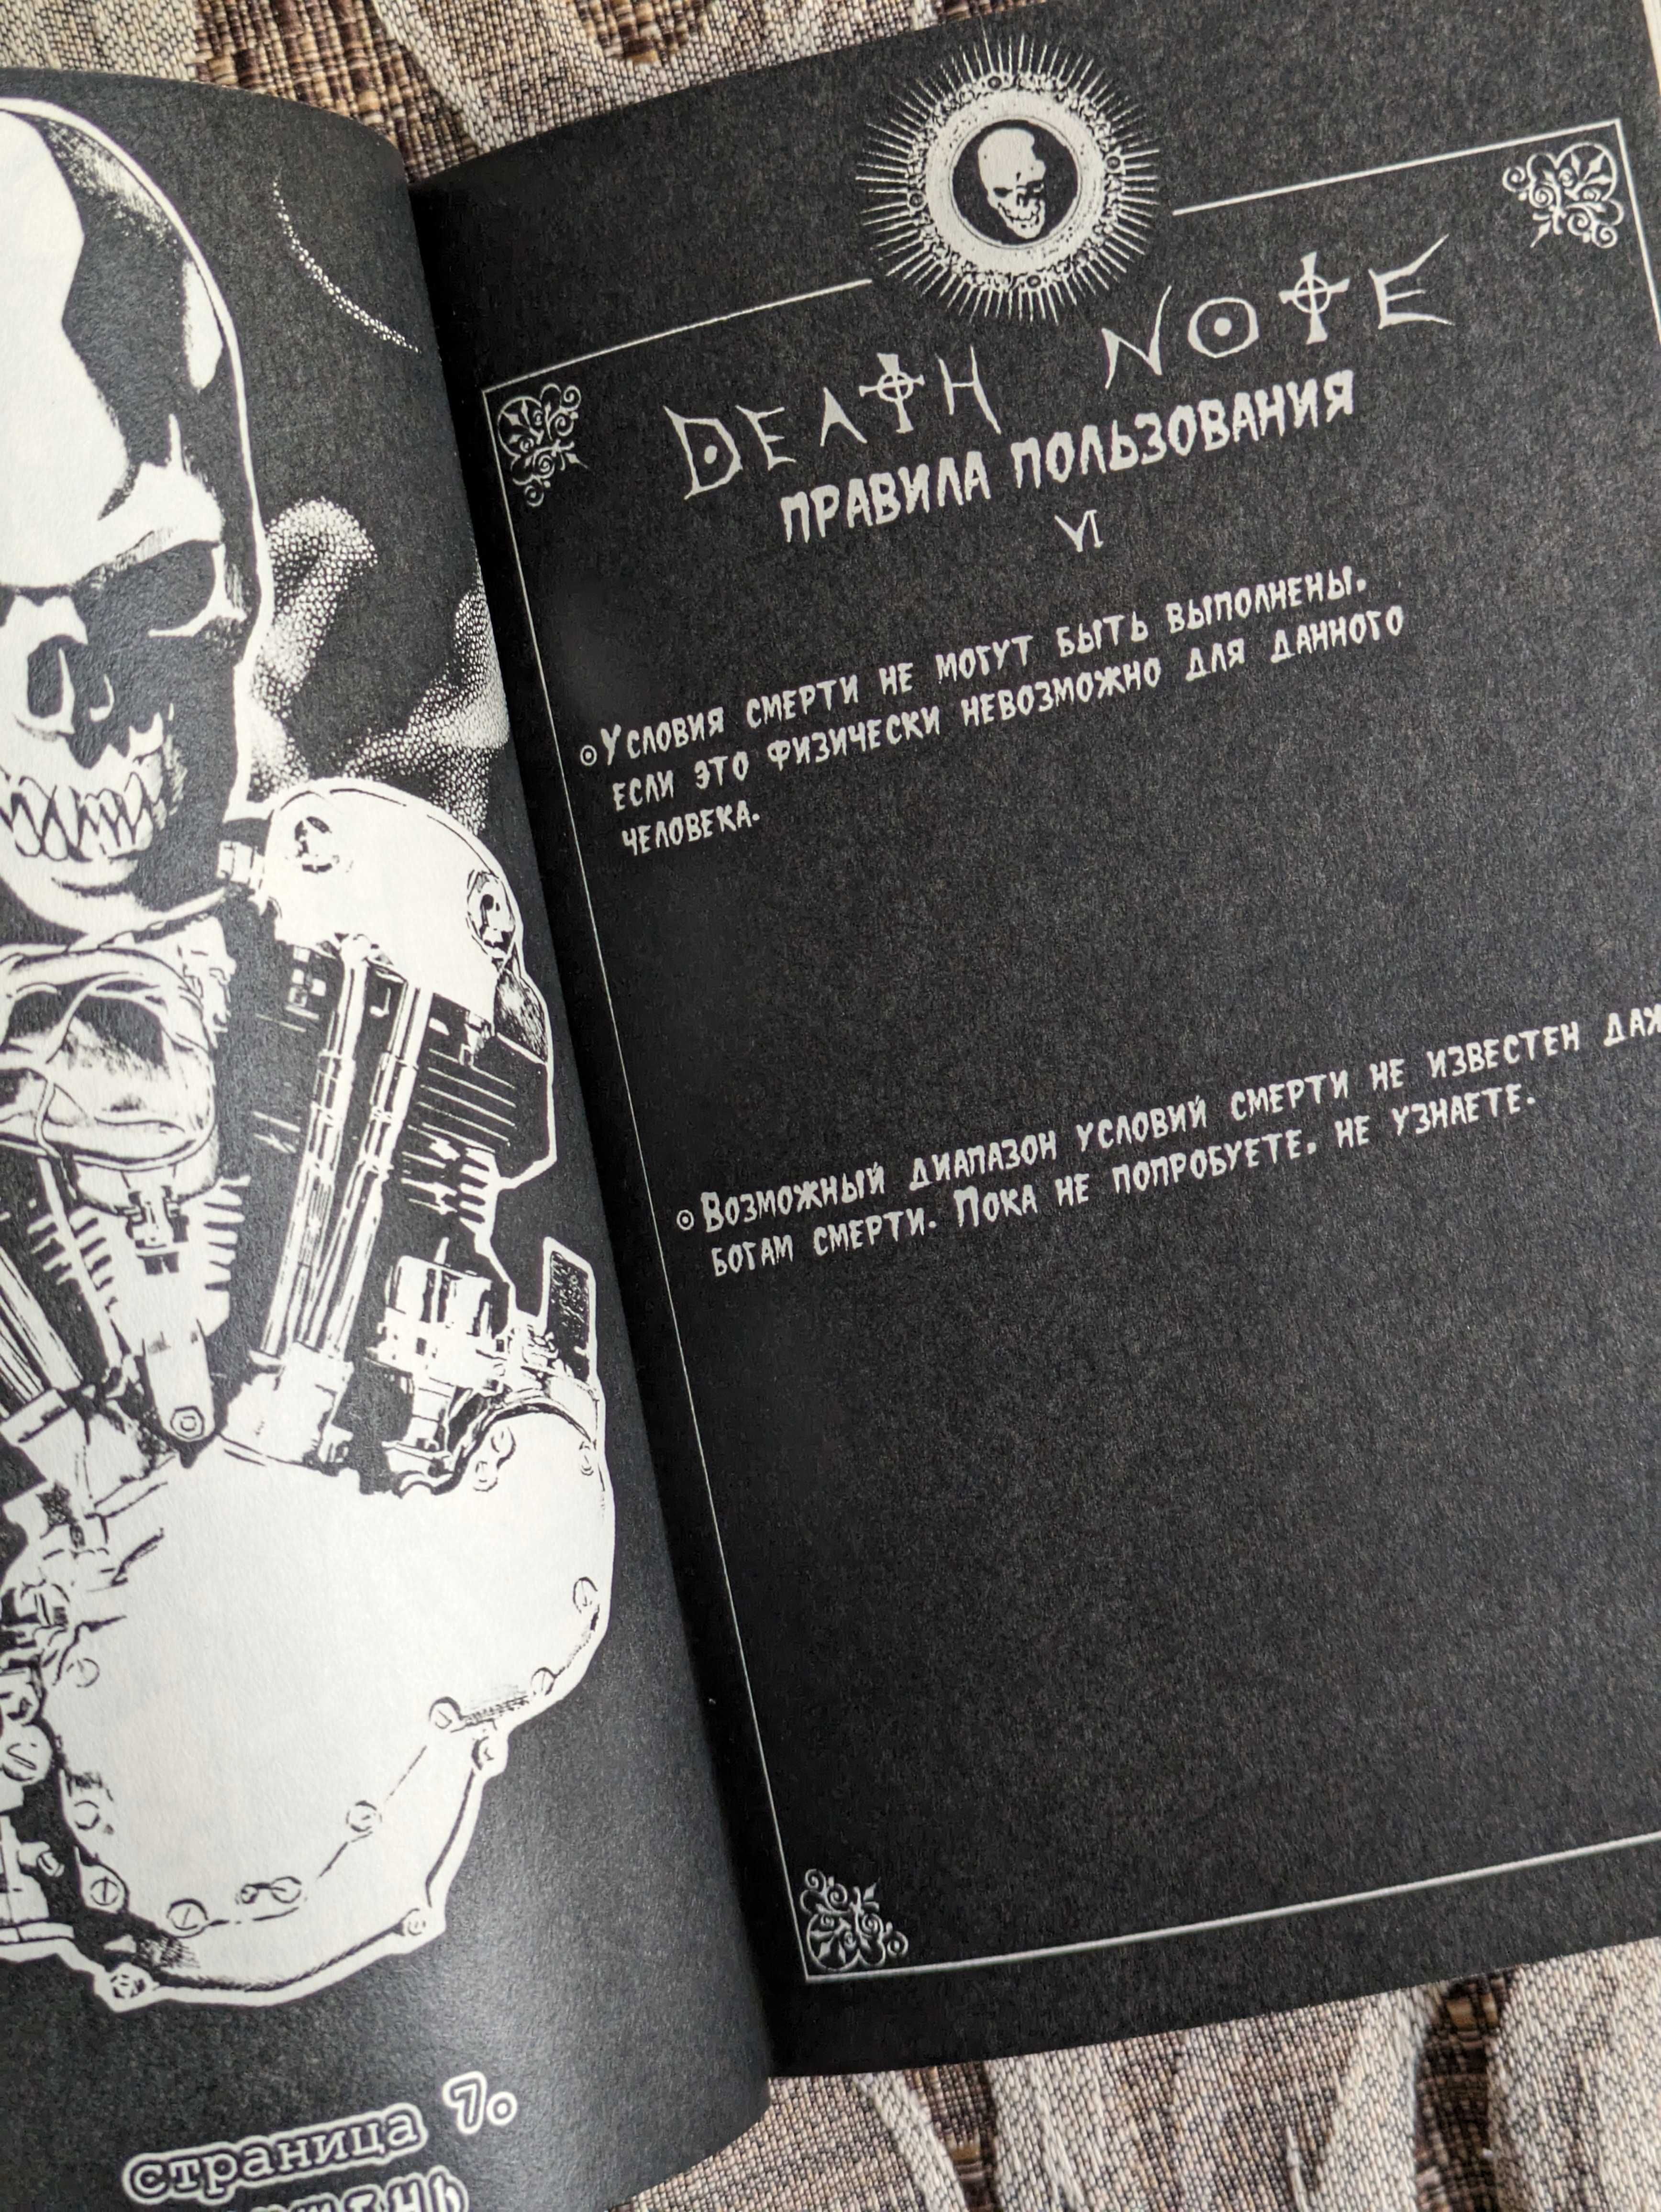 Тетрать смерти / Death note